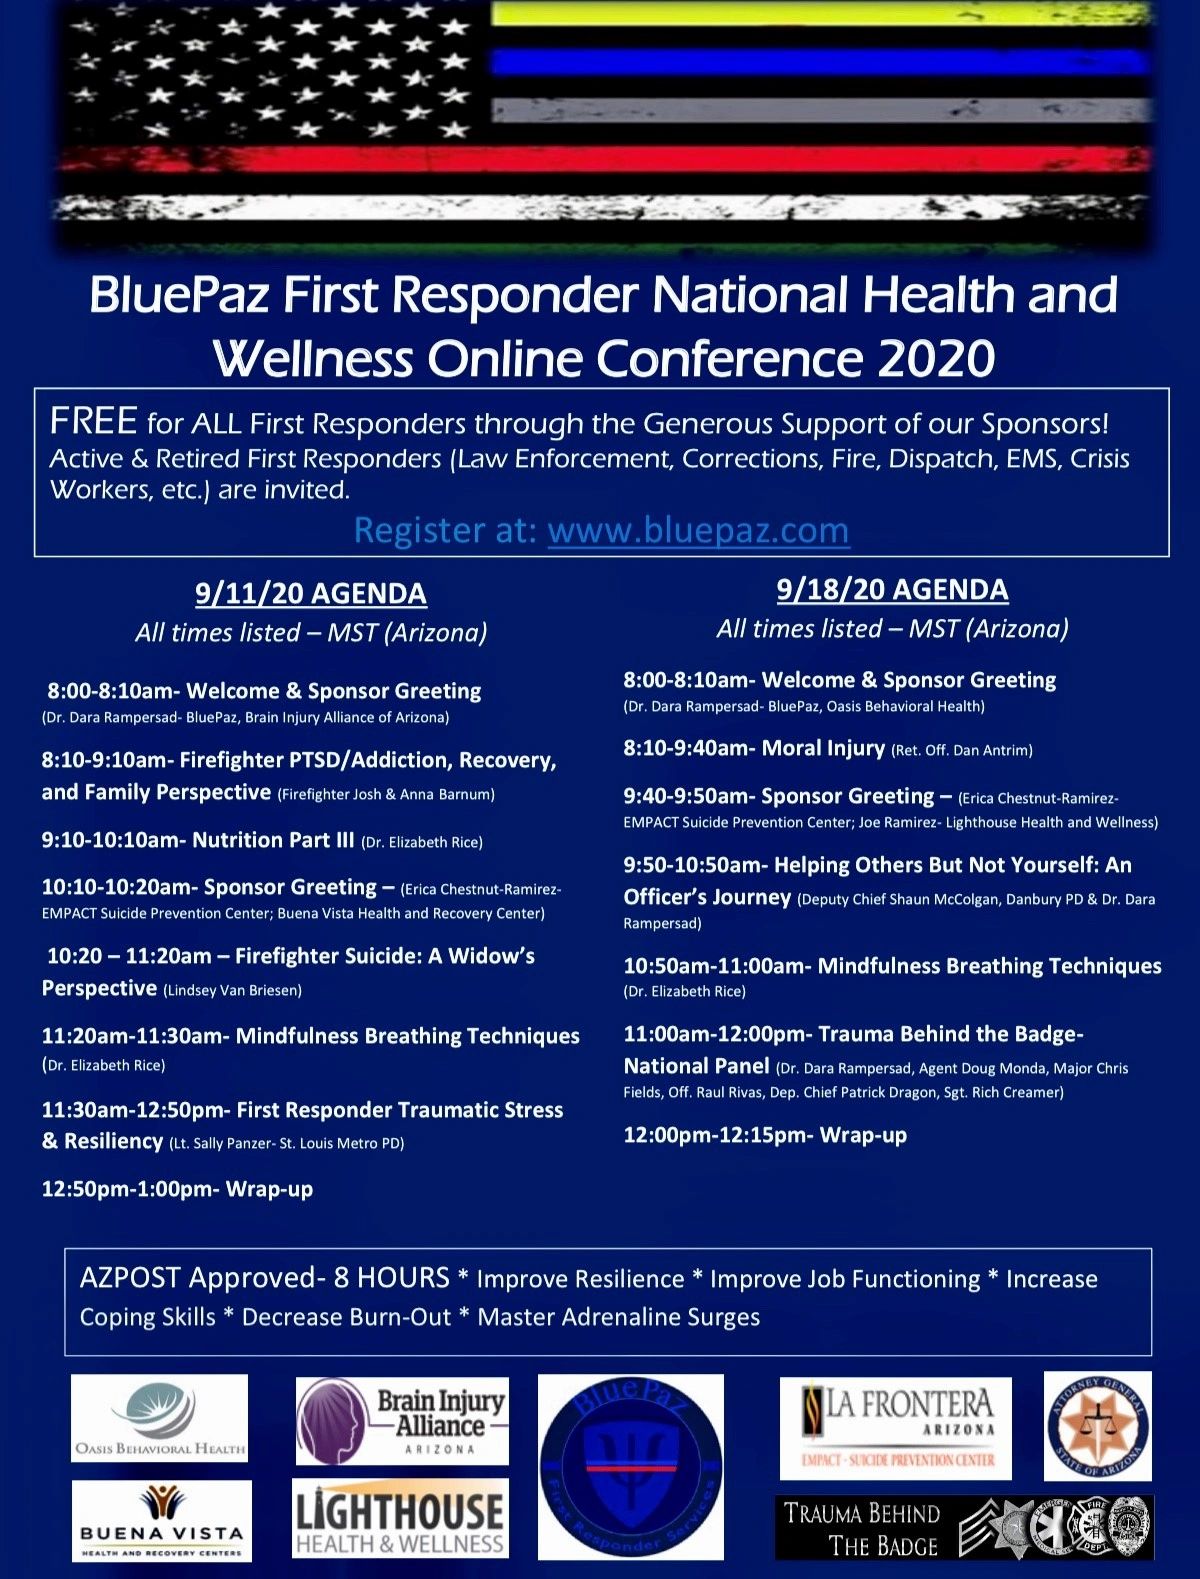 BluePaz 2020 Online First Responder Conference